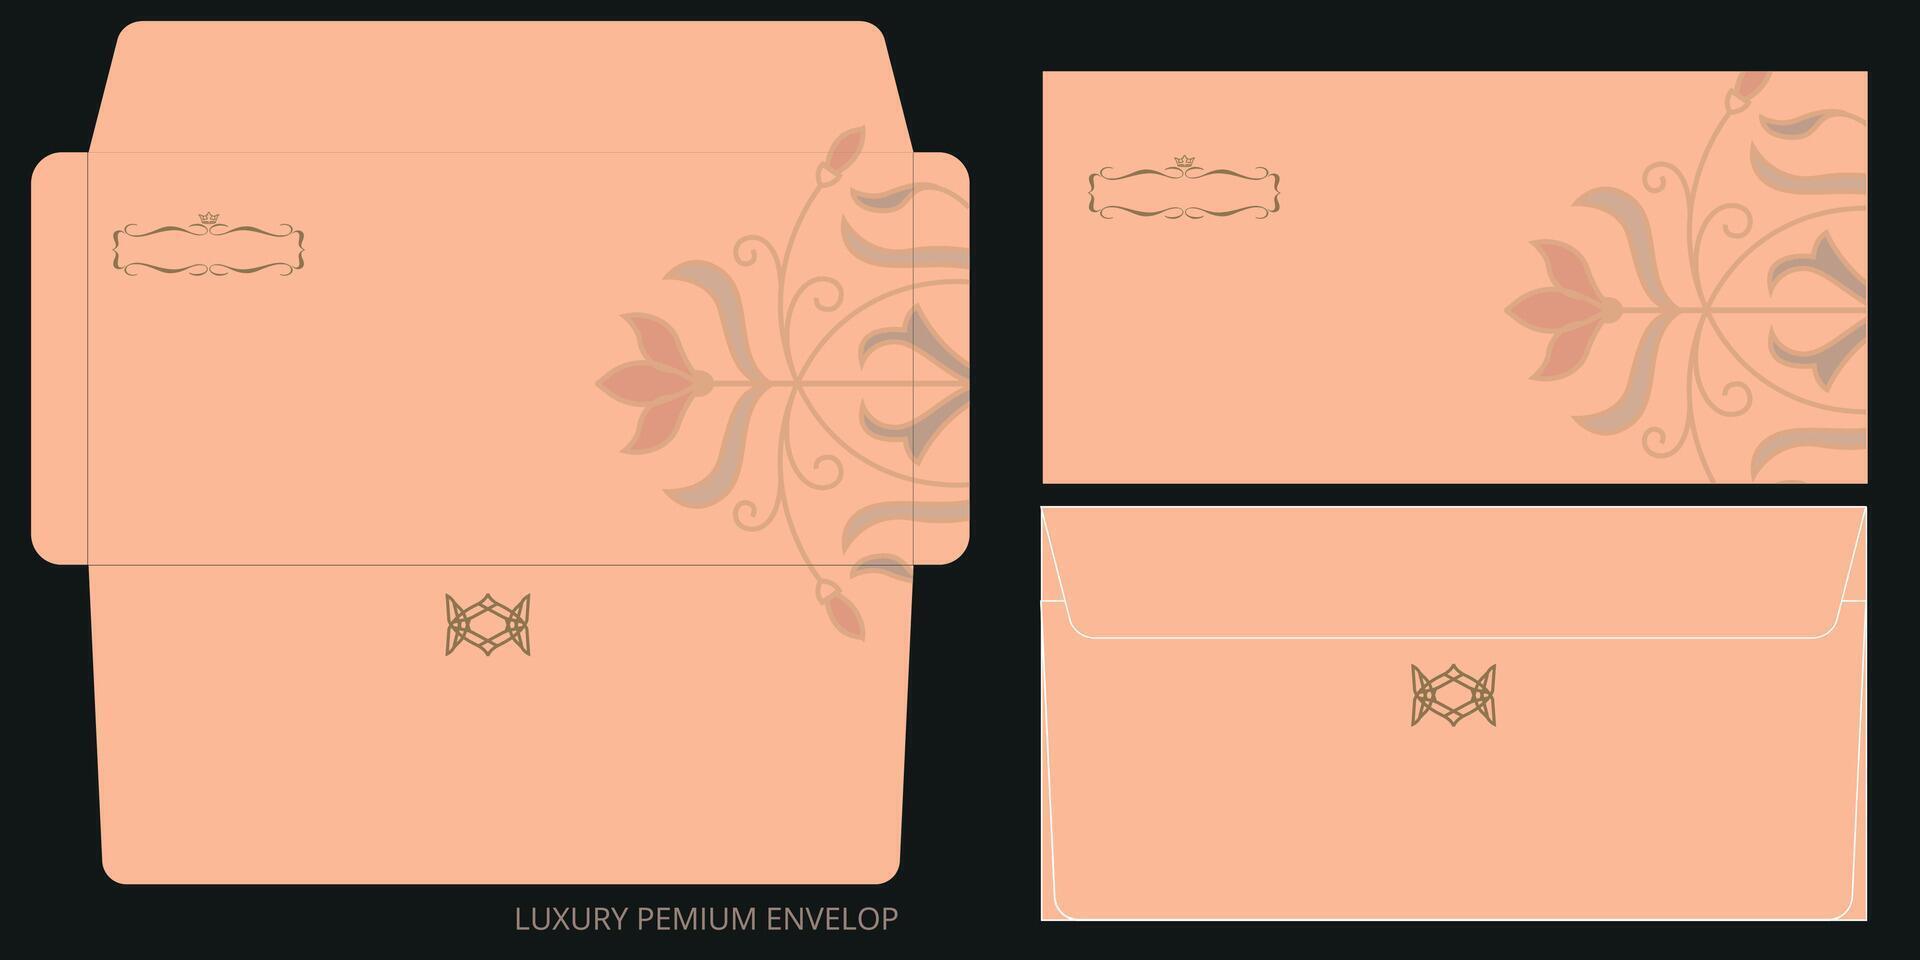 Luxury Premium Envelope Template Design vector